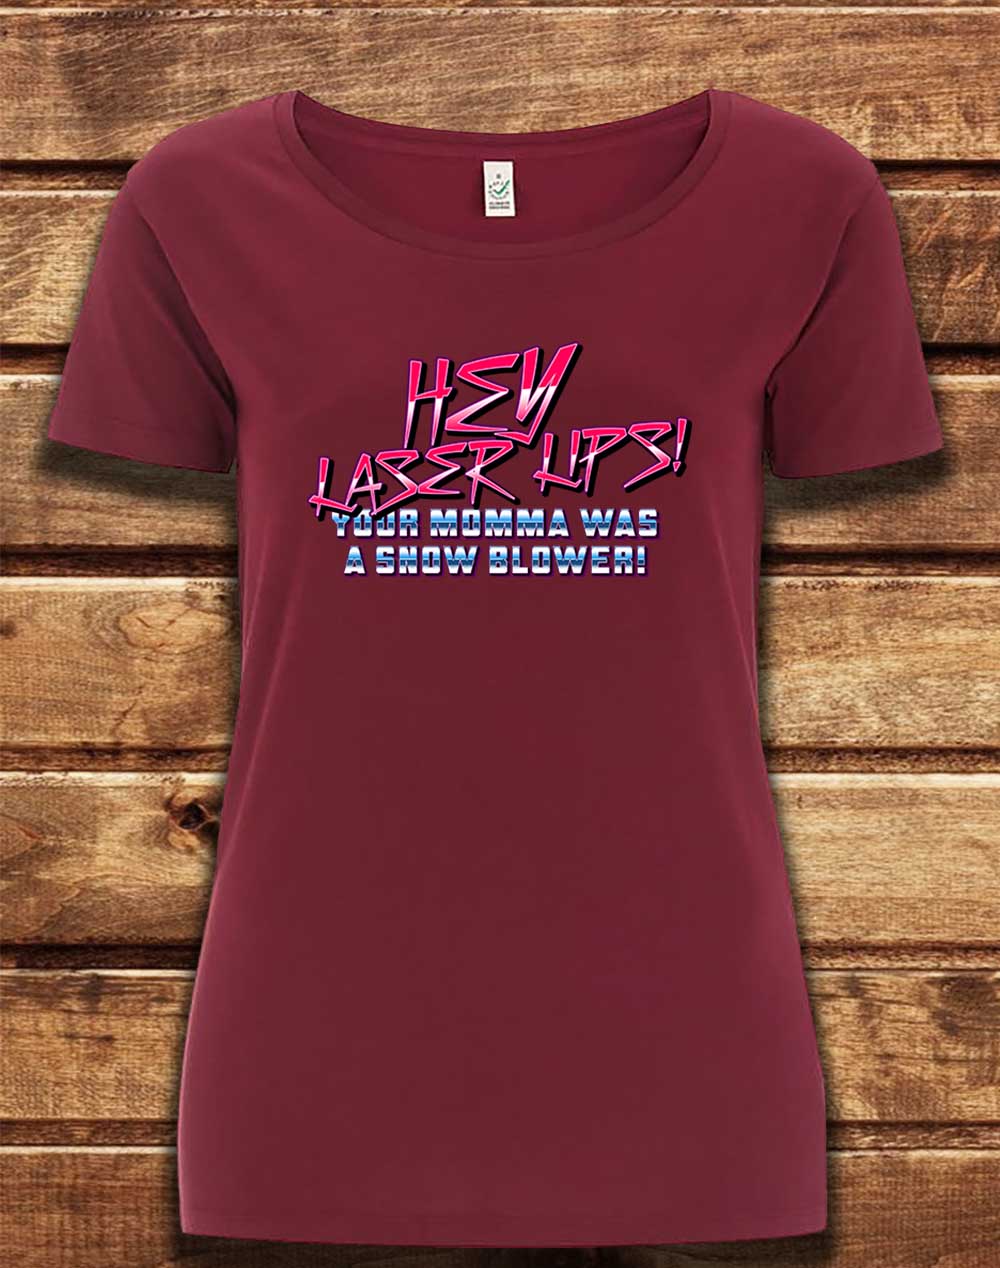 Burgundy - DELUXE Hey Laser Lips Organic Scoop Neck T-Shirt